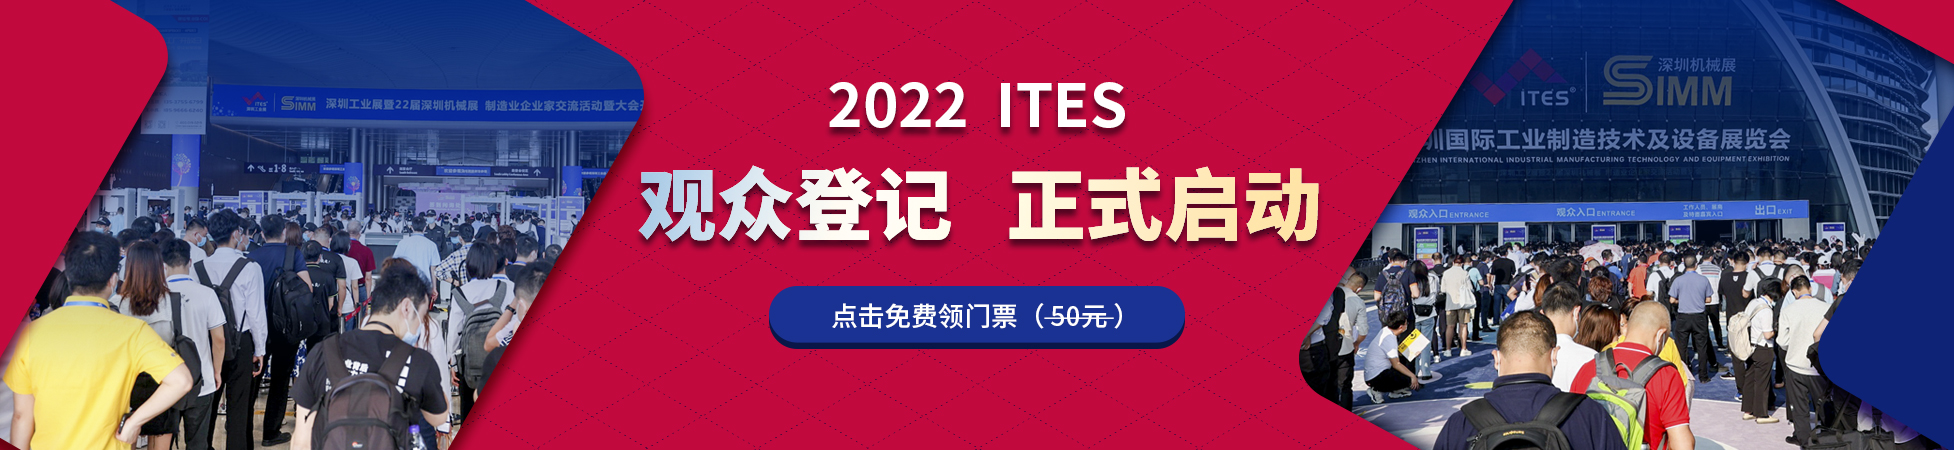 ITES深圳工业展2022提前登记免门票